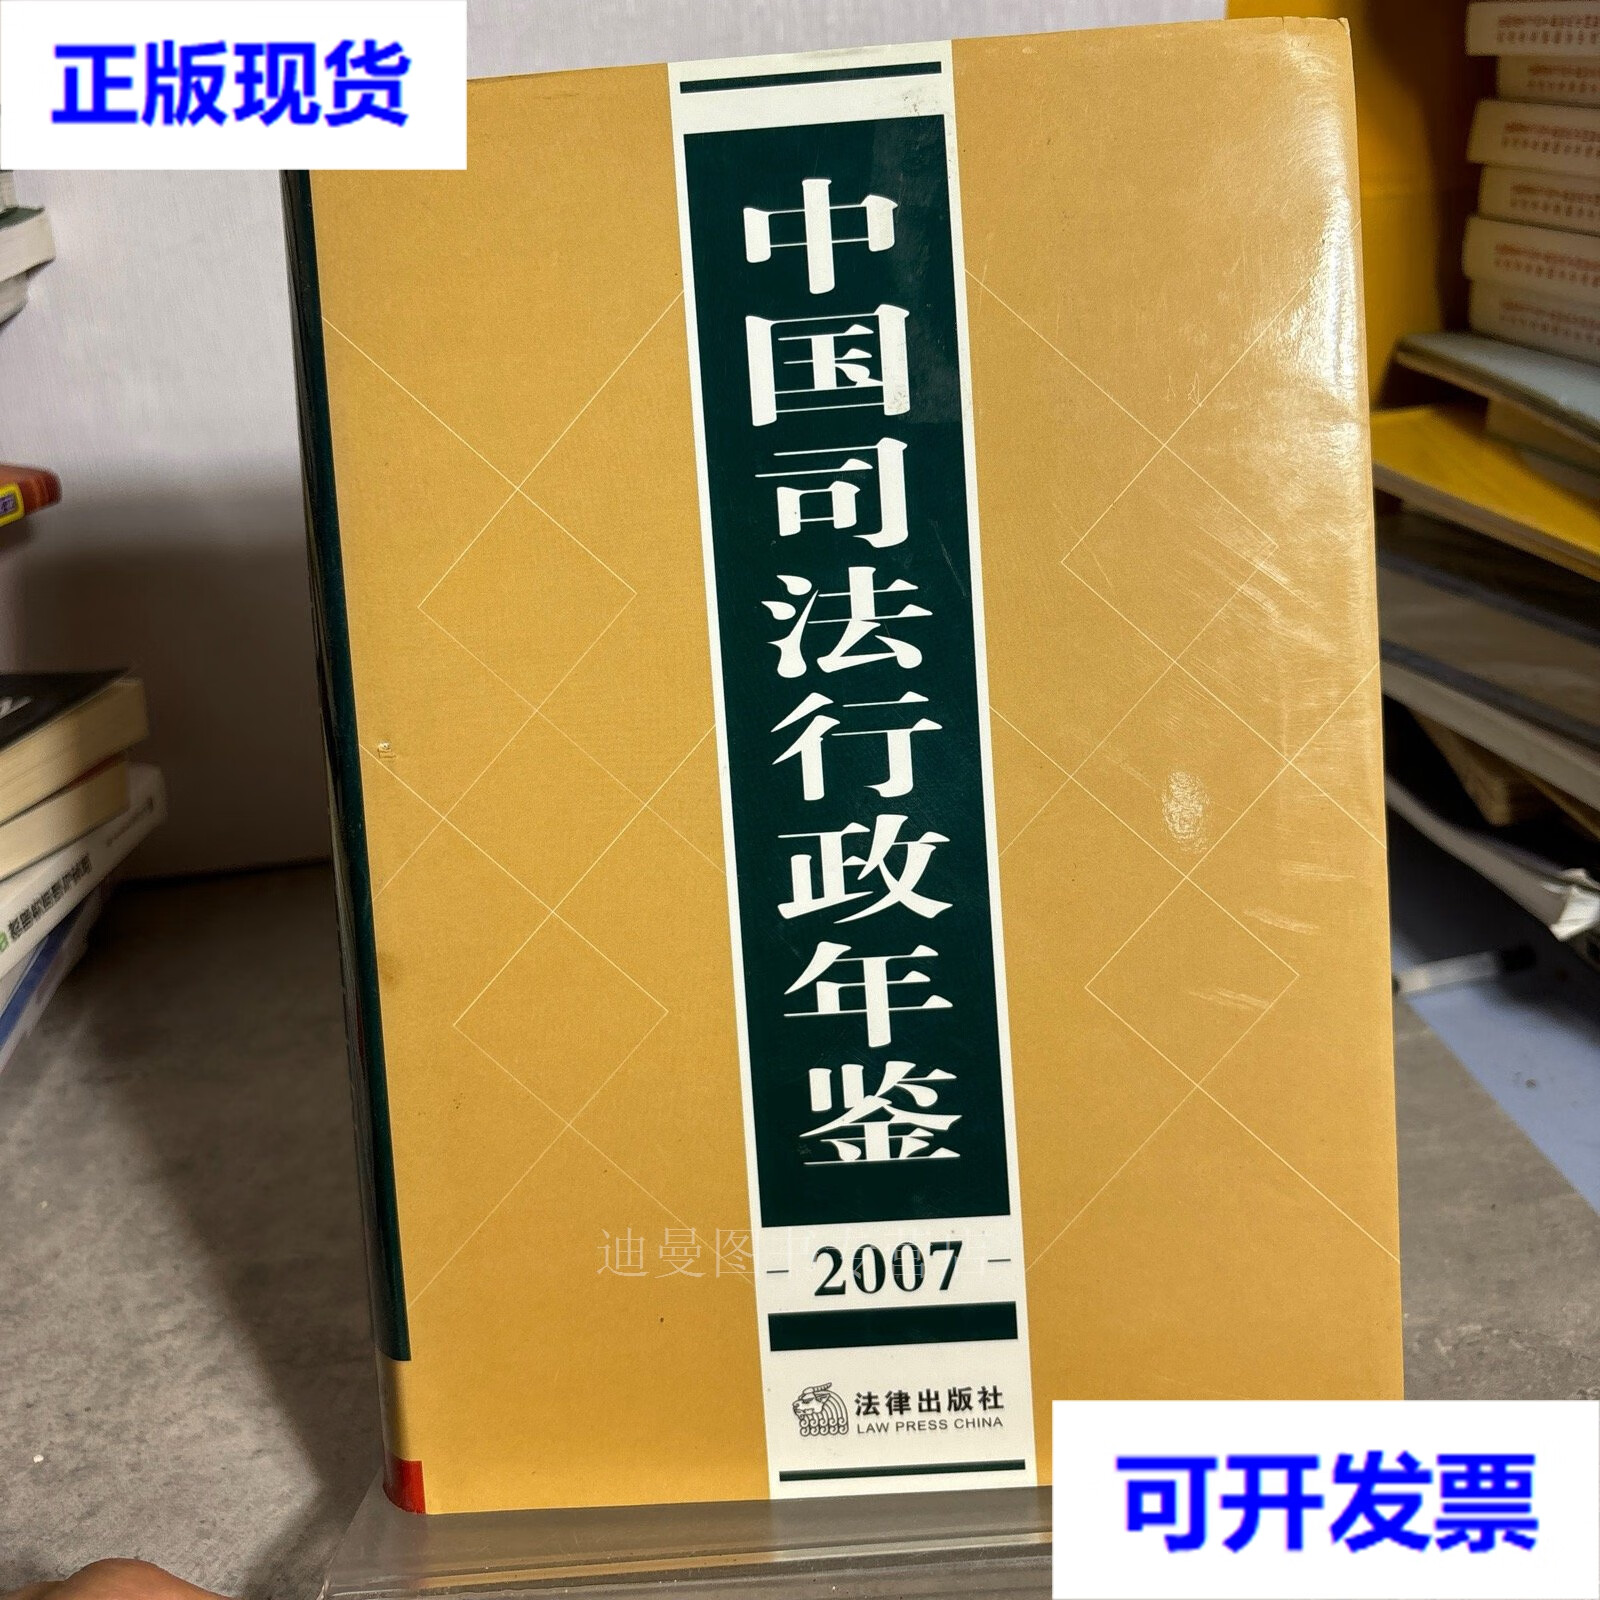 【二手九成新】中国司法行政年鉴2007 本书编辑部 法律出版社